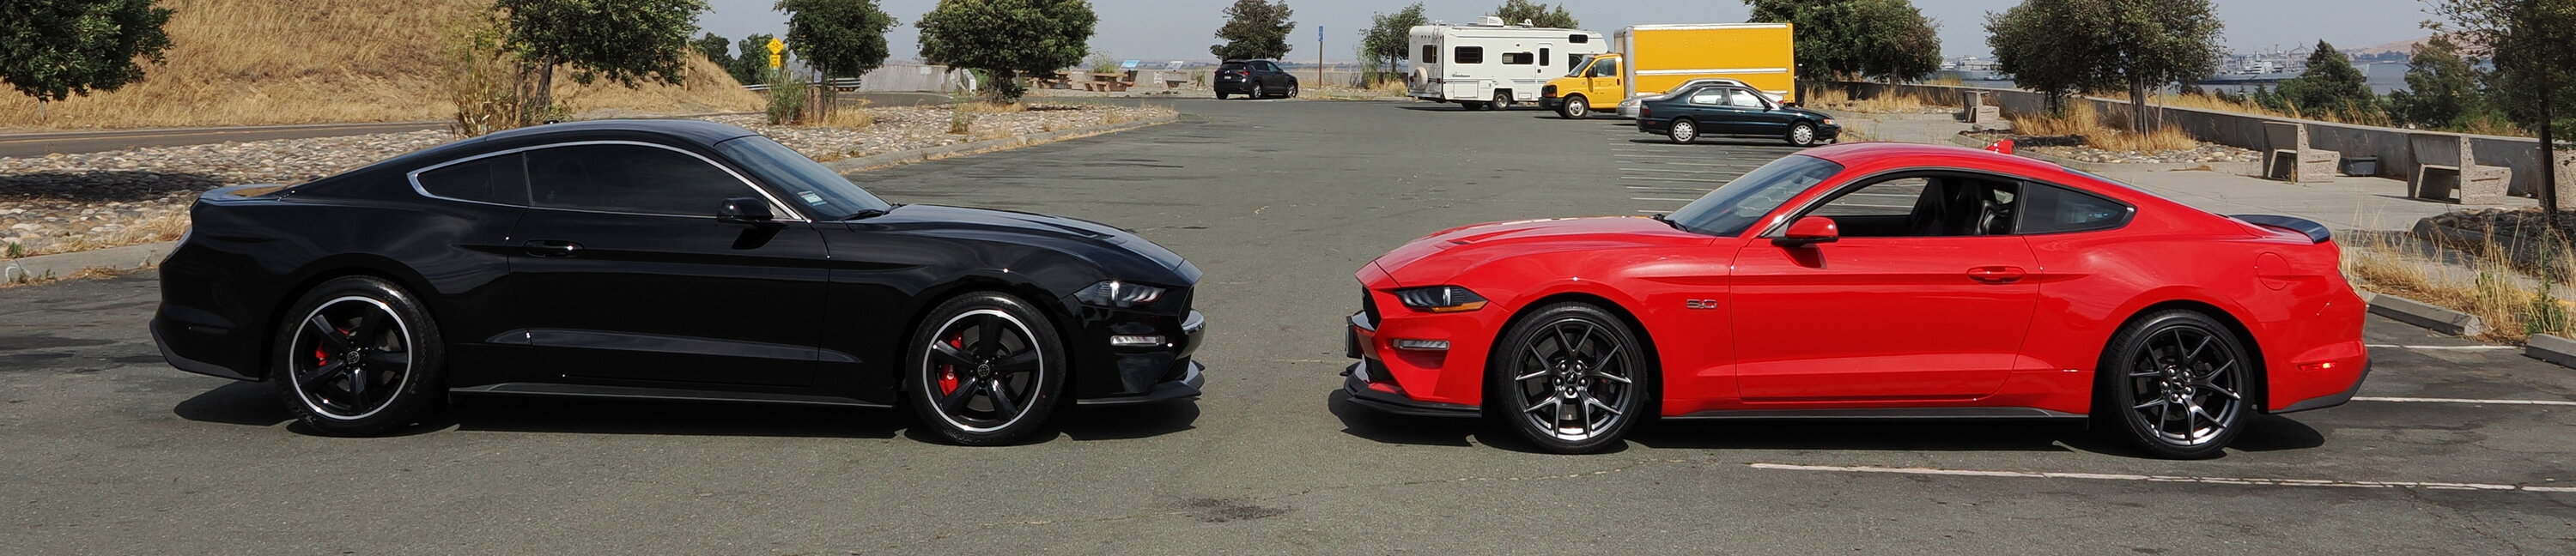 Mustangs2.jpg